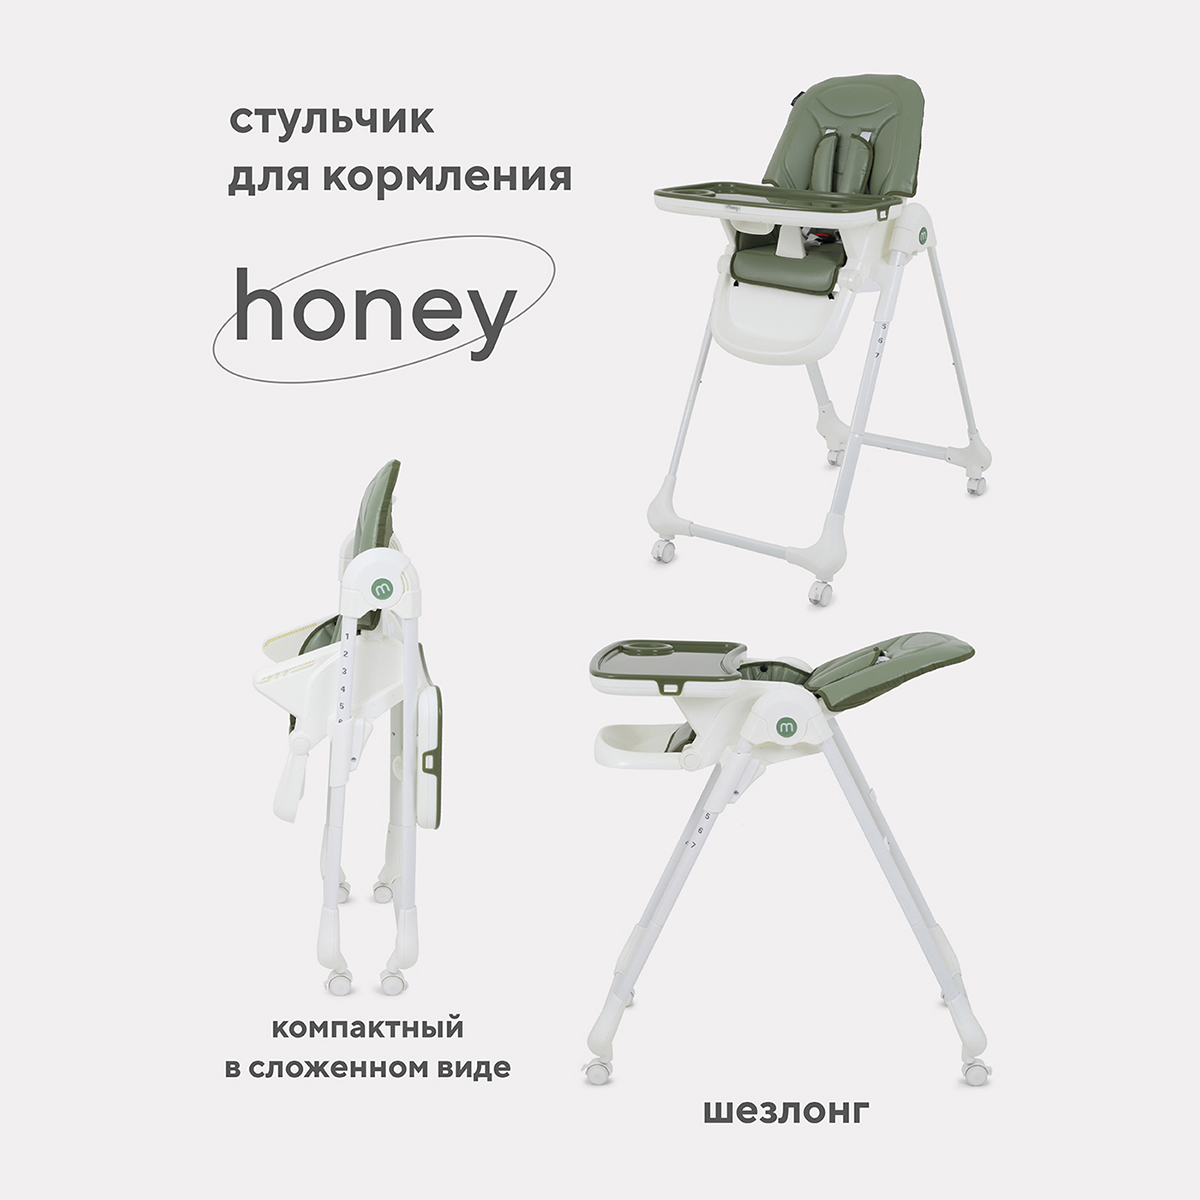 Стульчик для кормления MOWBaby HONEY от 6 месяцев RH600 green стульчик для кормления mowbaby honey от 6 месяцев rh600 grey